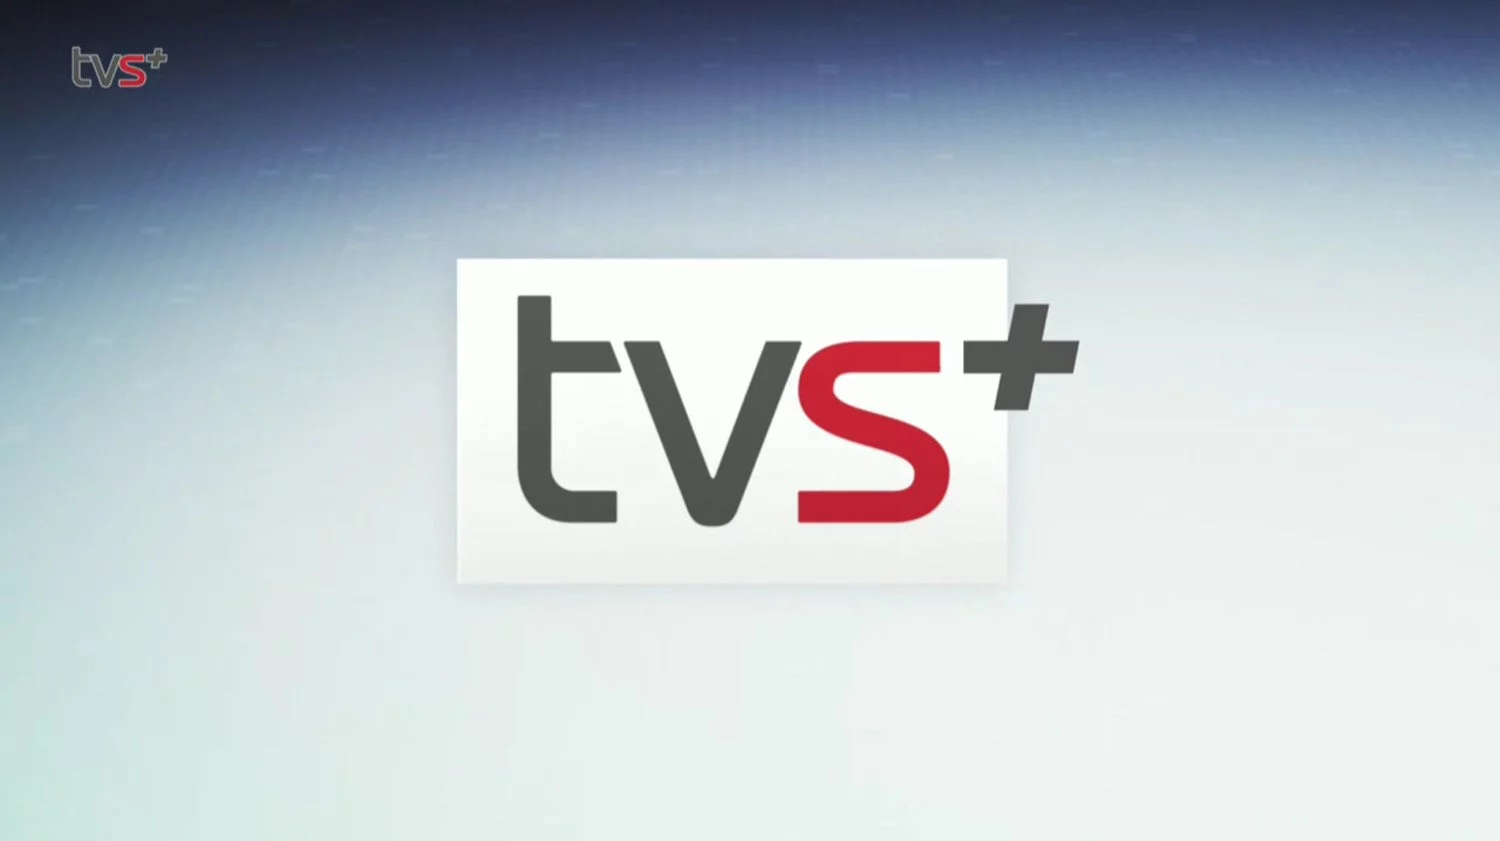 tvsyd logo